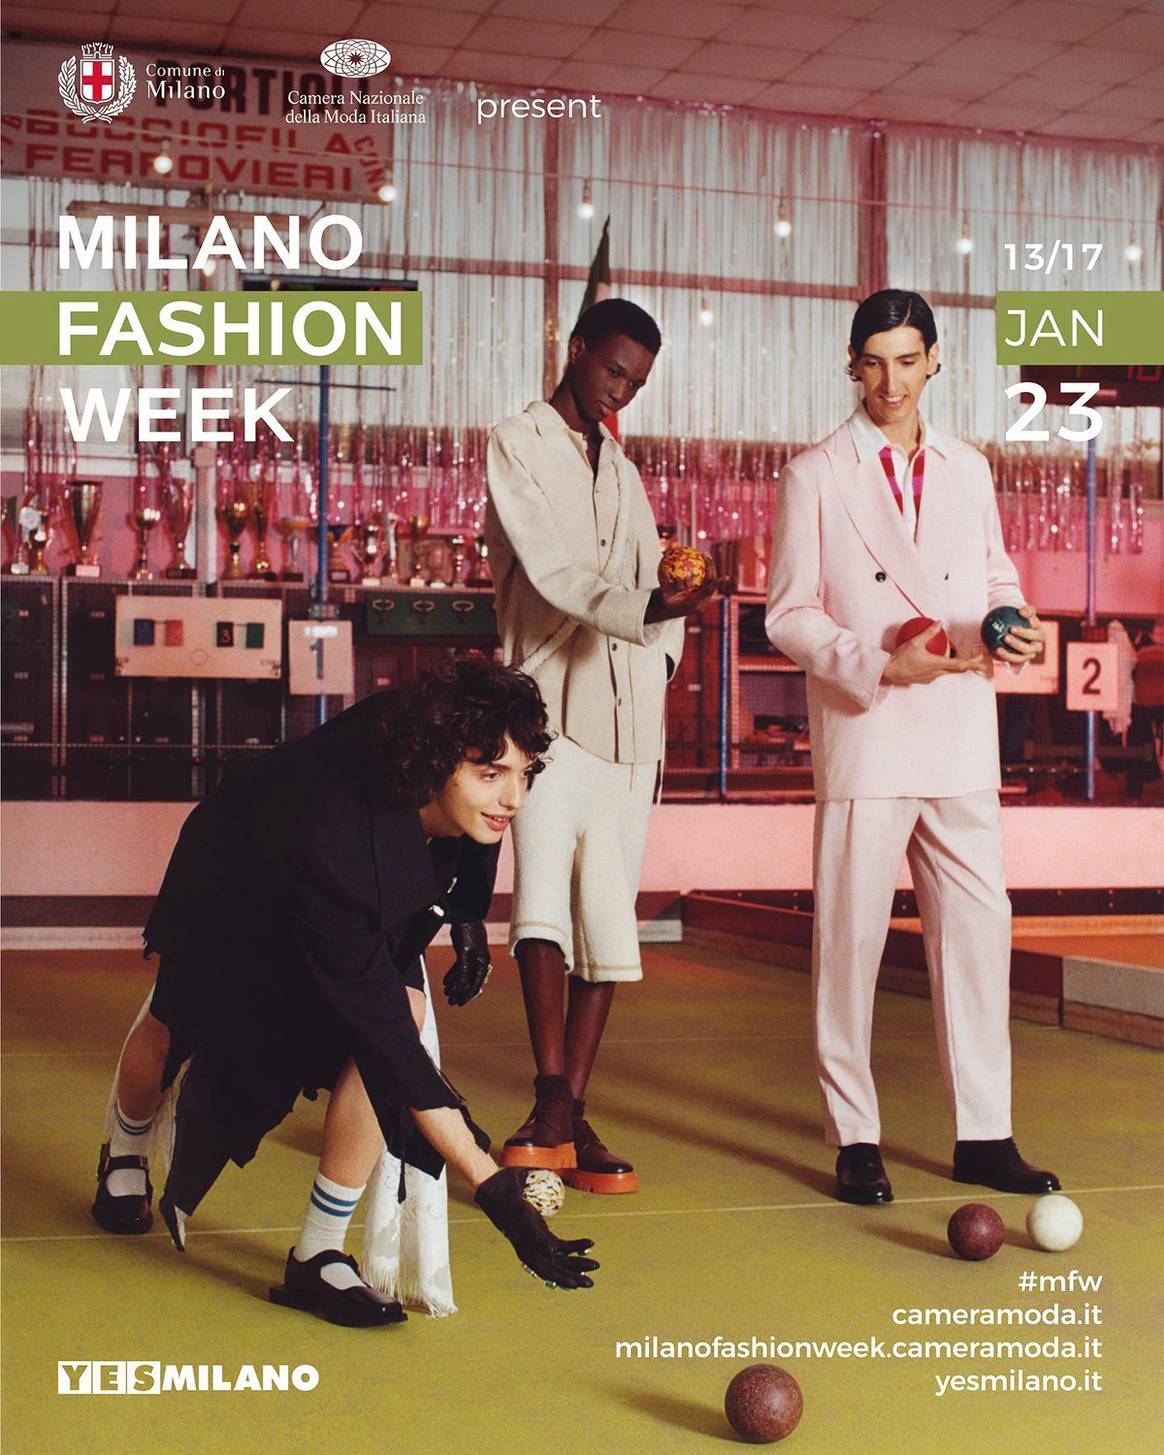 Photo Credits: Cartel promocional de la próxima edición de Milán Fashion Week. CNMI, página oficial de Facebook.